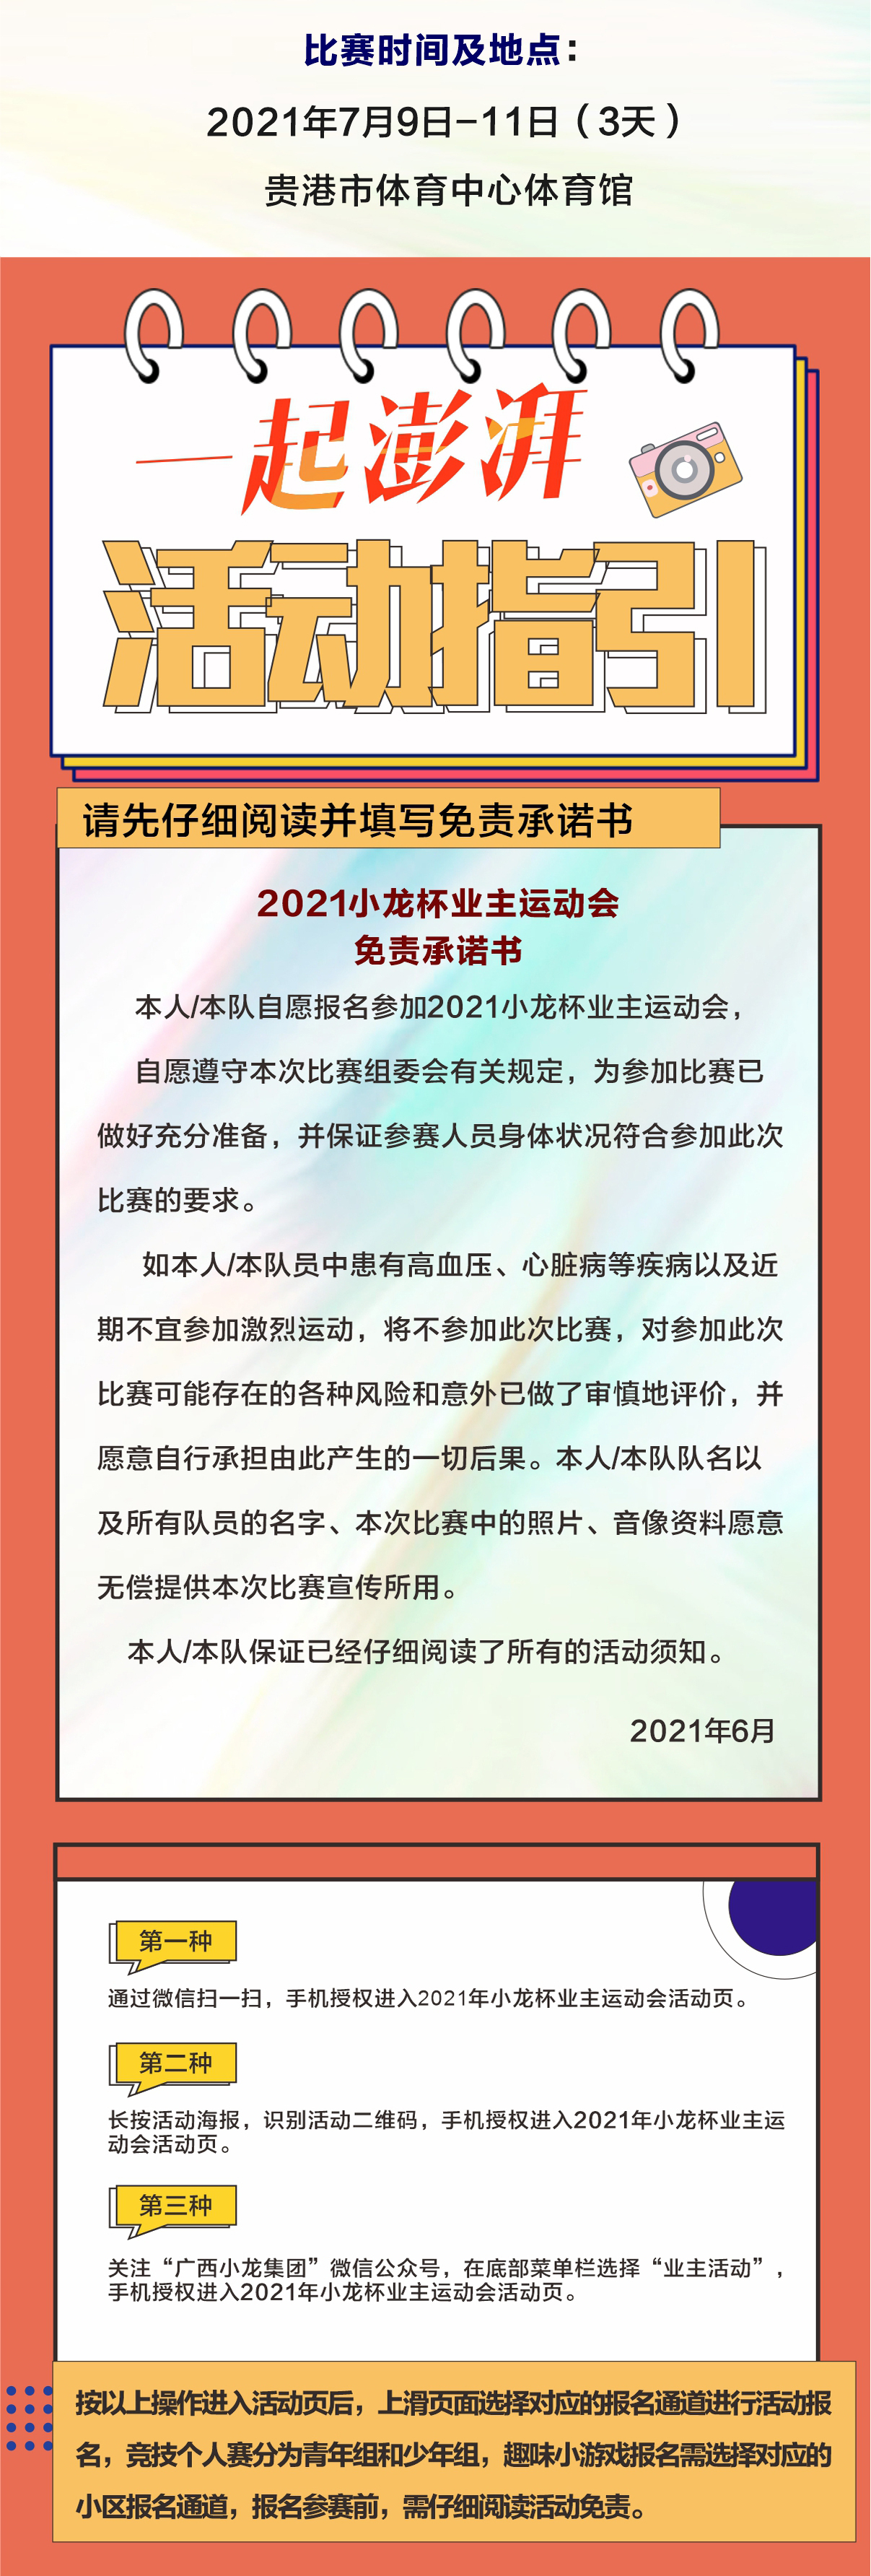 【小龙集团】FUN肆热爱 一起澎湃 2021小龙杯业主运动会 报名指引